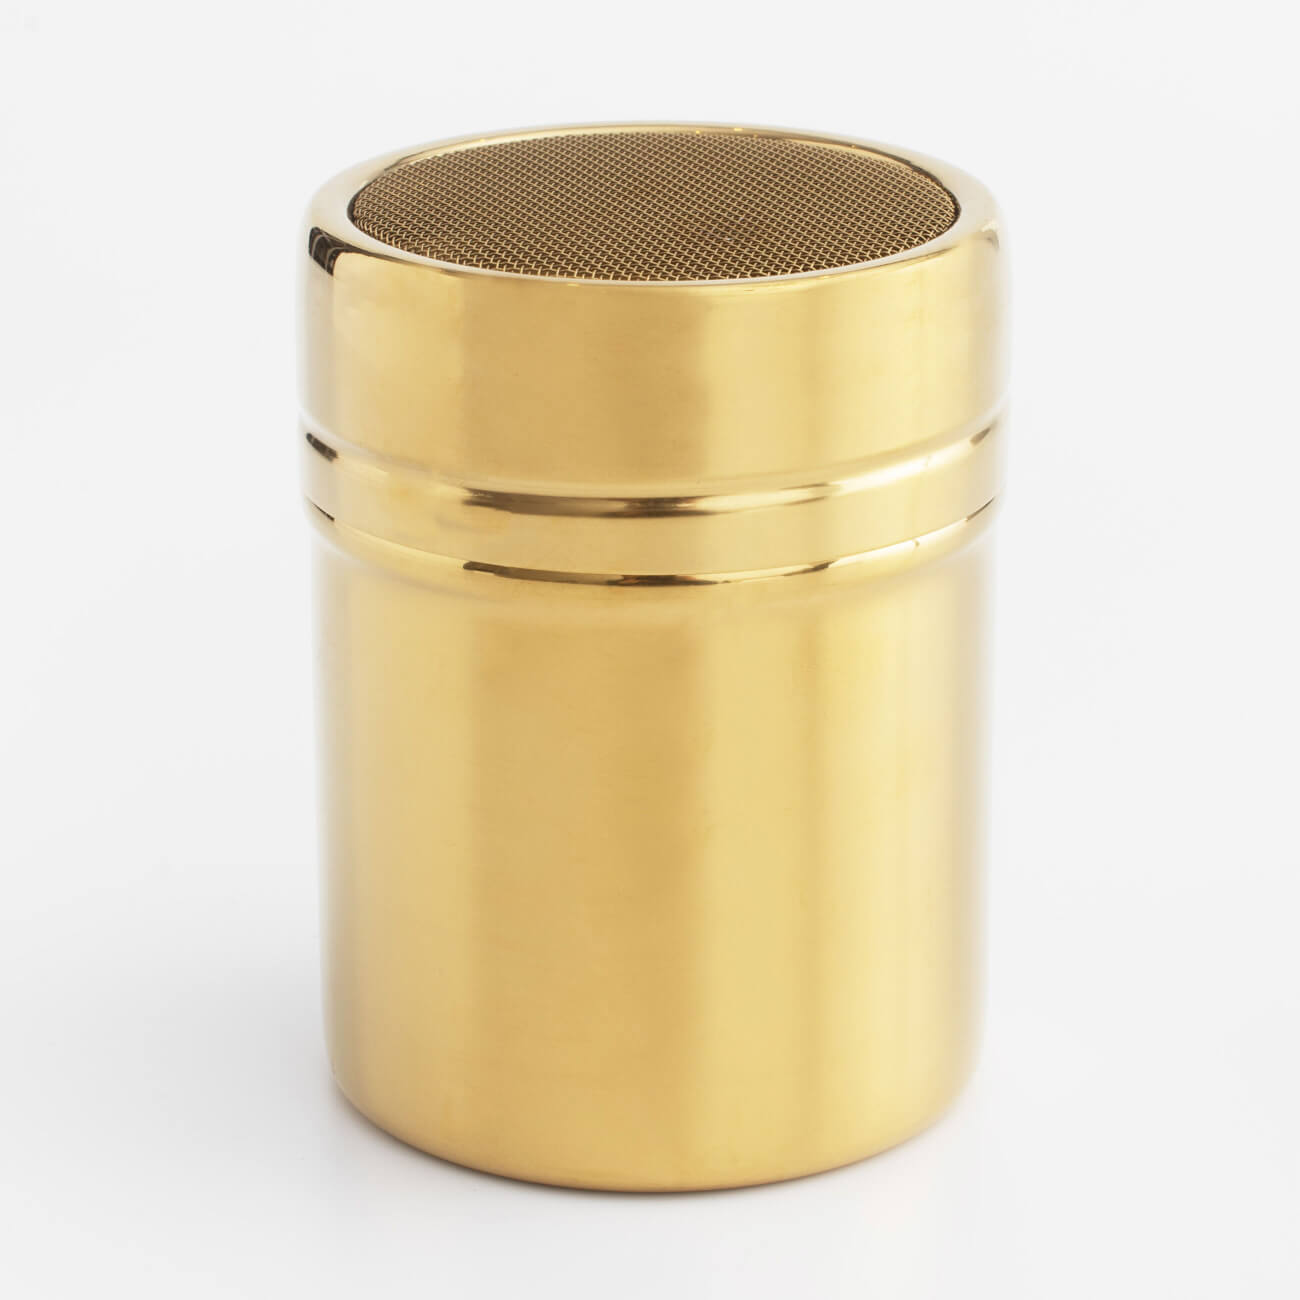 Сито-кружка, 9х7 см, с крышкой, сталь/пластик, золотистое, Classic gold сито кружка мультидом для муки